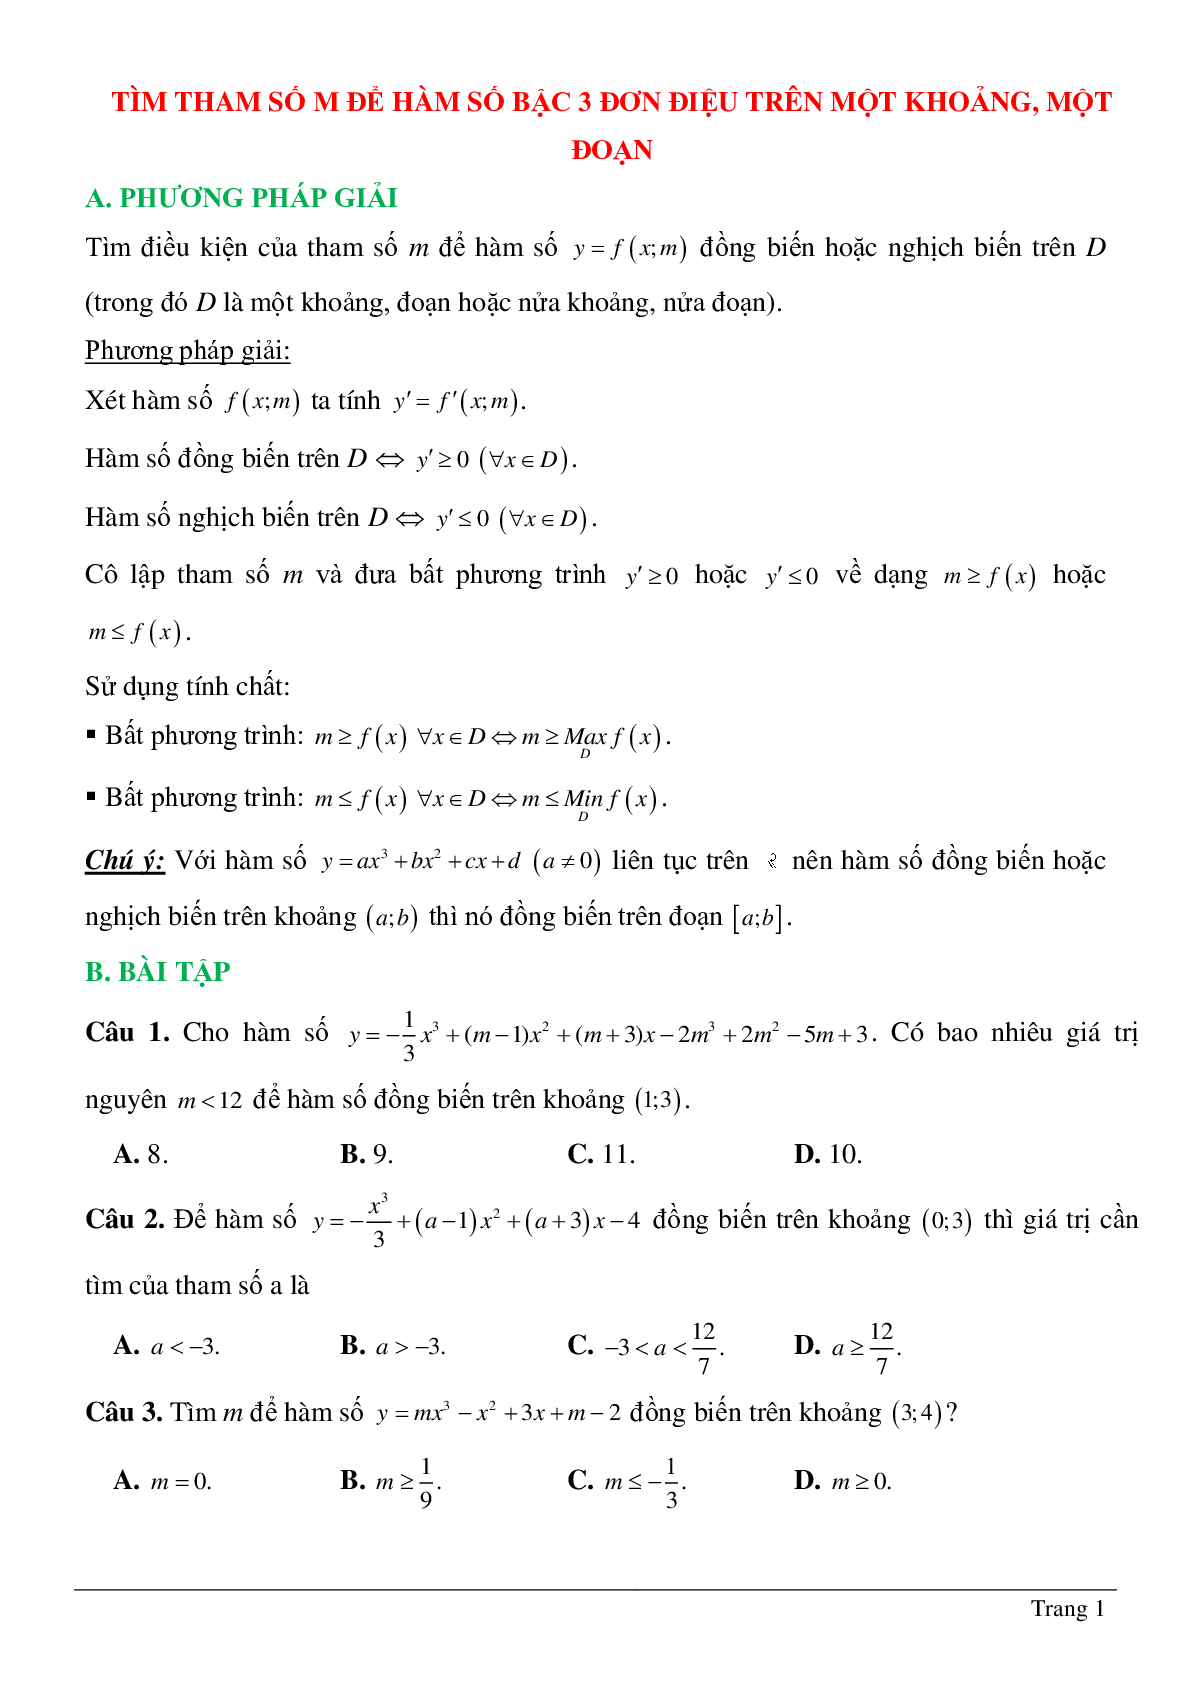 Tìm tham số M để hàm số bậc ba đồng biến, nghịch biến trên khoảng K cho trước (trang 1)